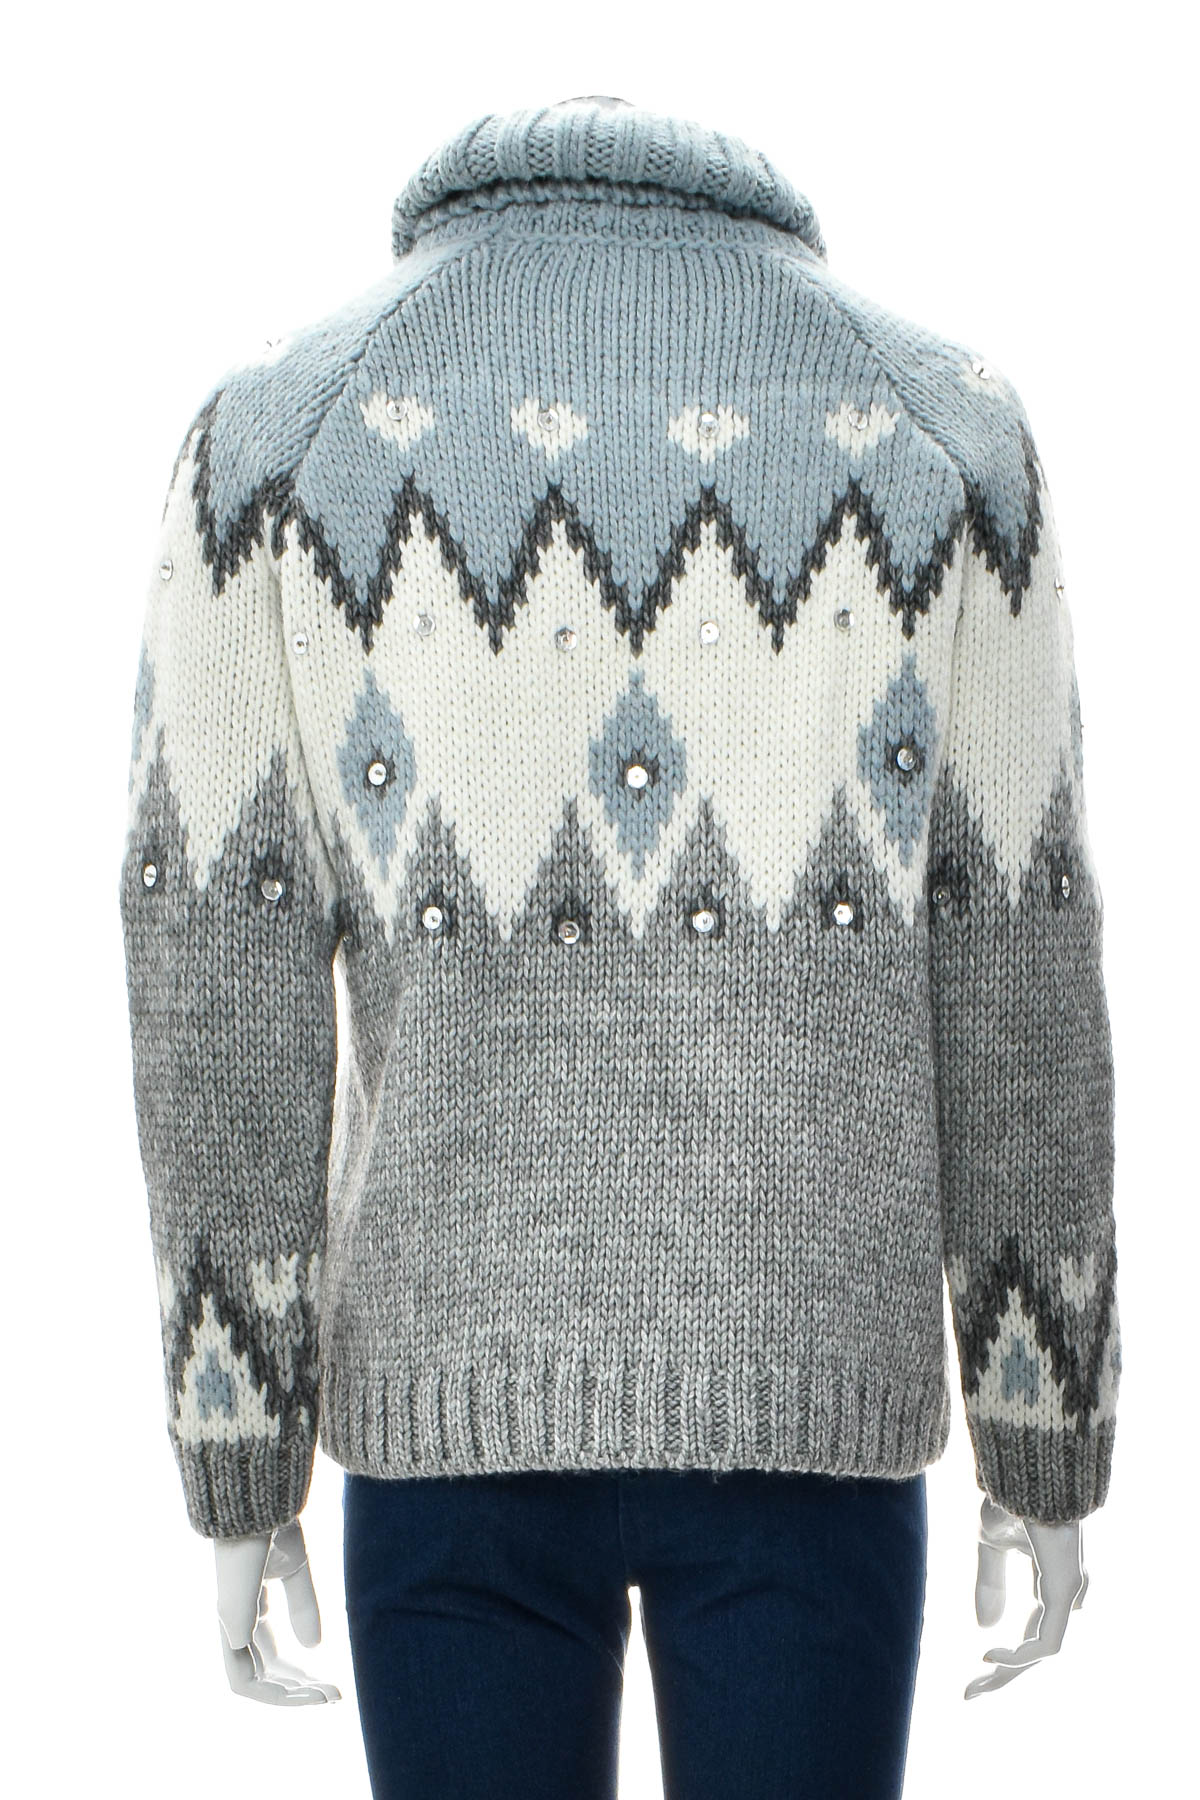 Women's sweater - Reken Maar - 1